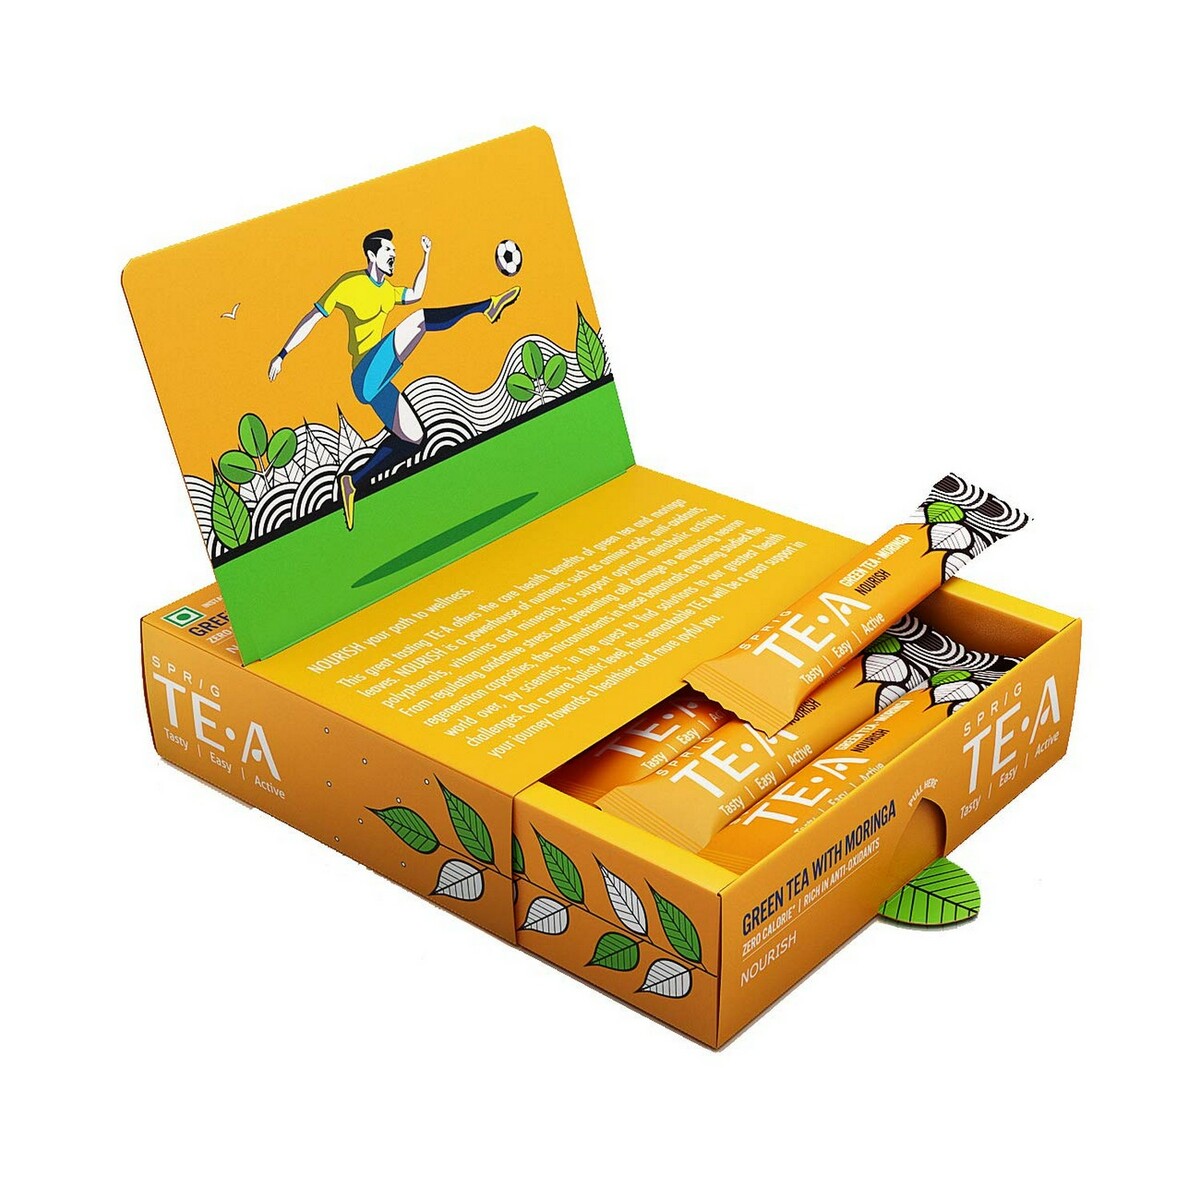 Sprig Te.A Green Tea & Moringa Pack 25